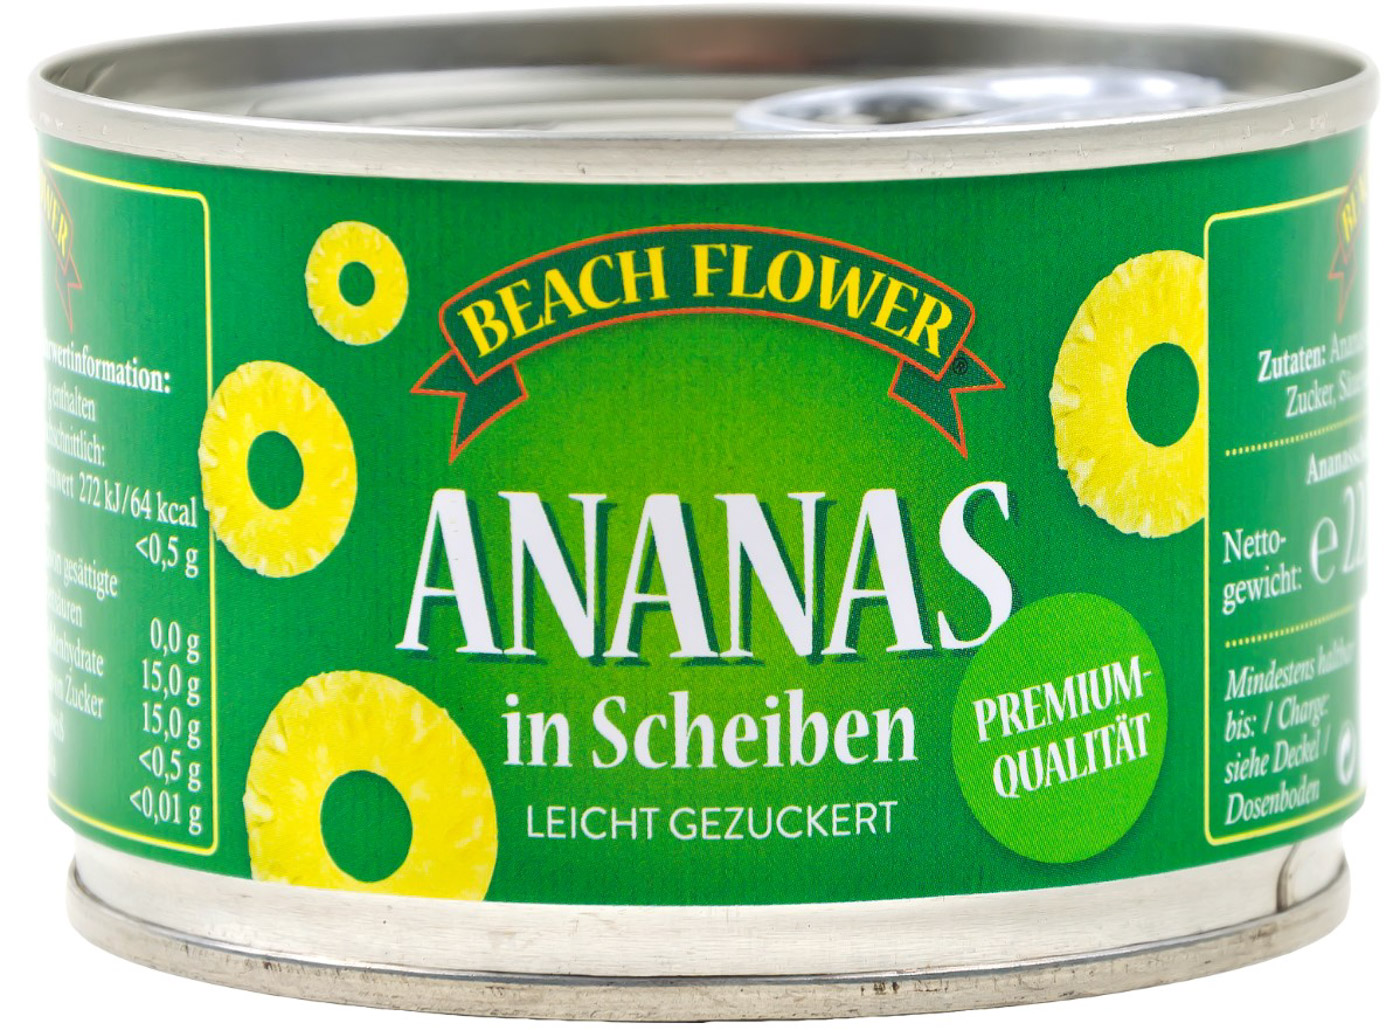 Beach Flower Ananas Scheiben Konserve 227G